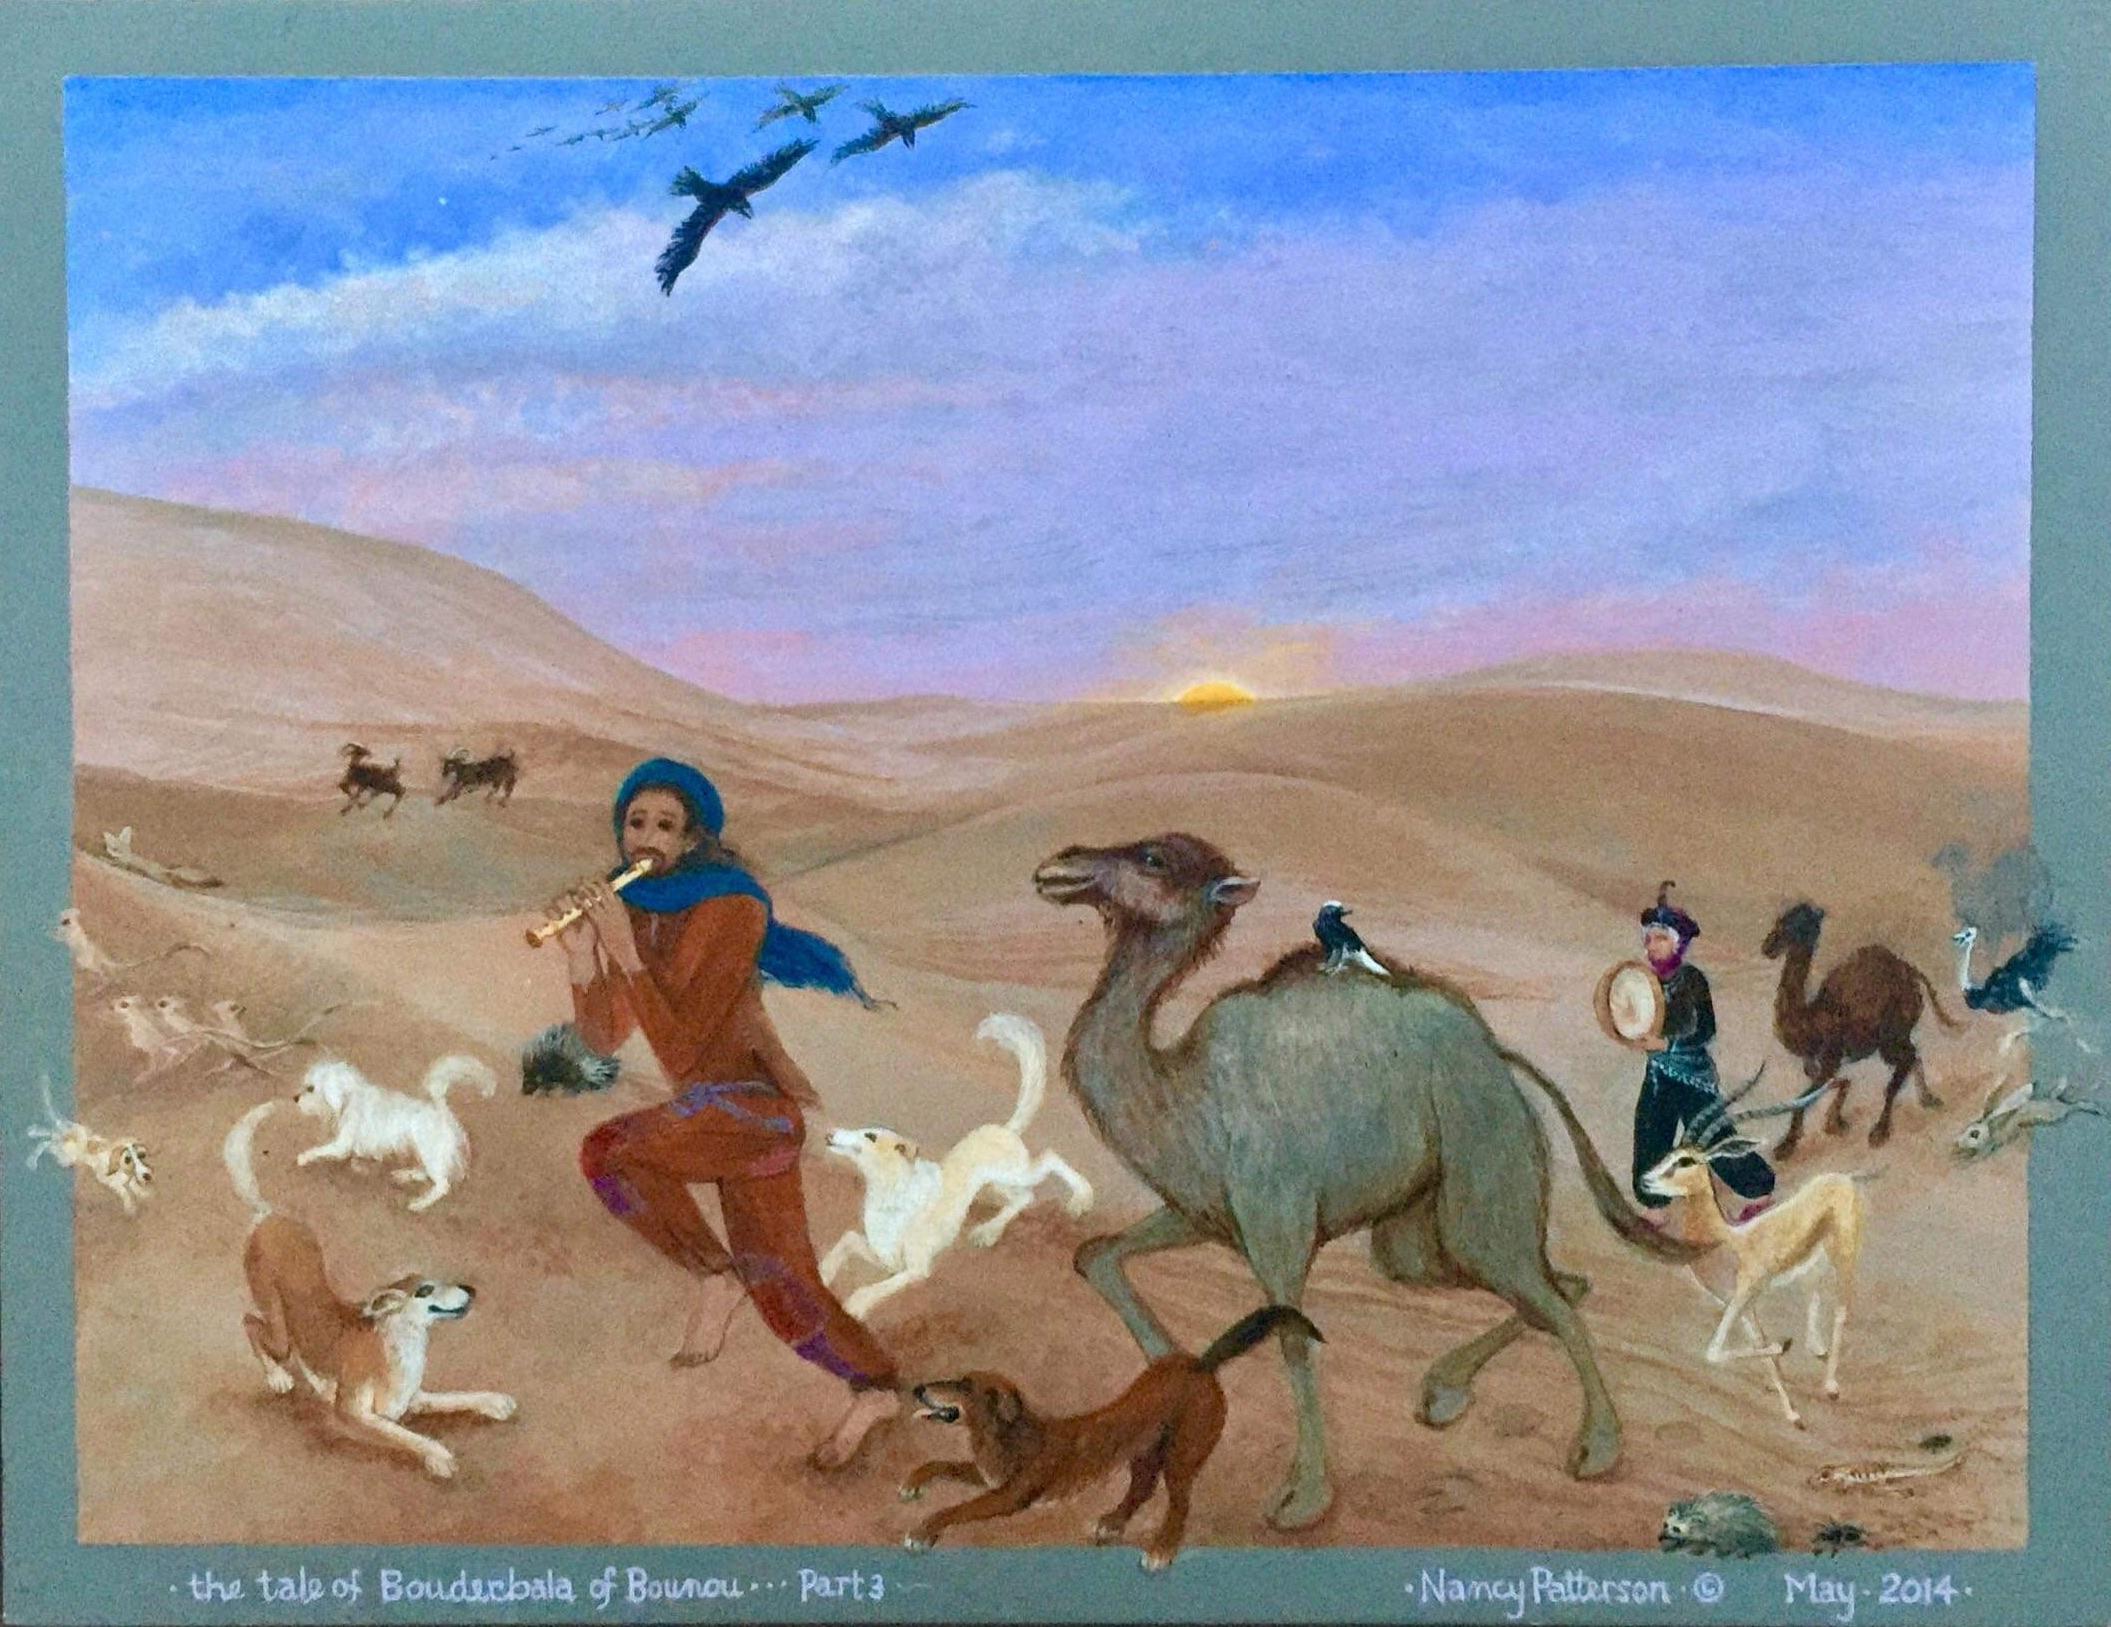 Peinture d'art populaire africain, danse, musique, animal, marocain, désert Gnawa, chien, camel - Painting de Nancy Patterson